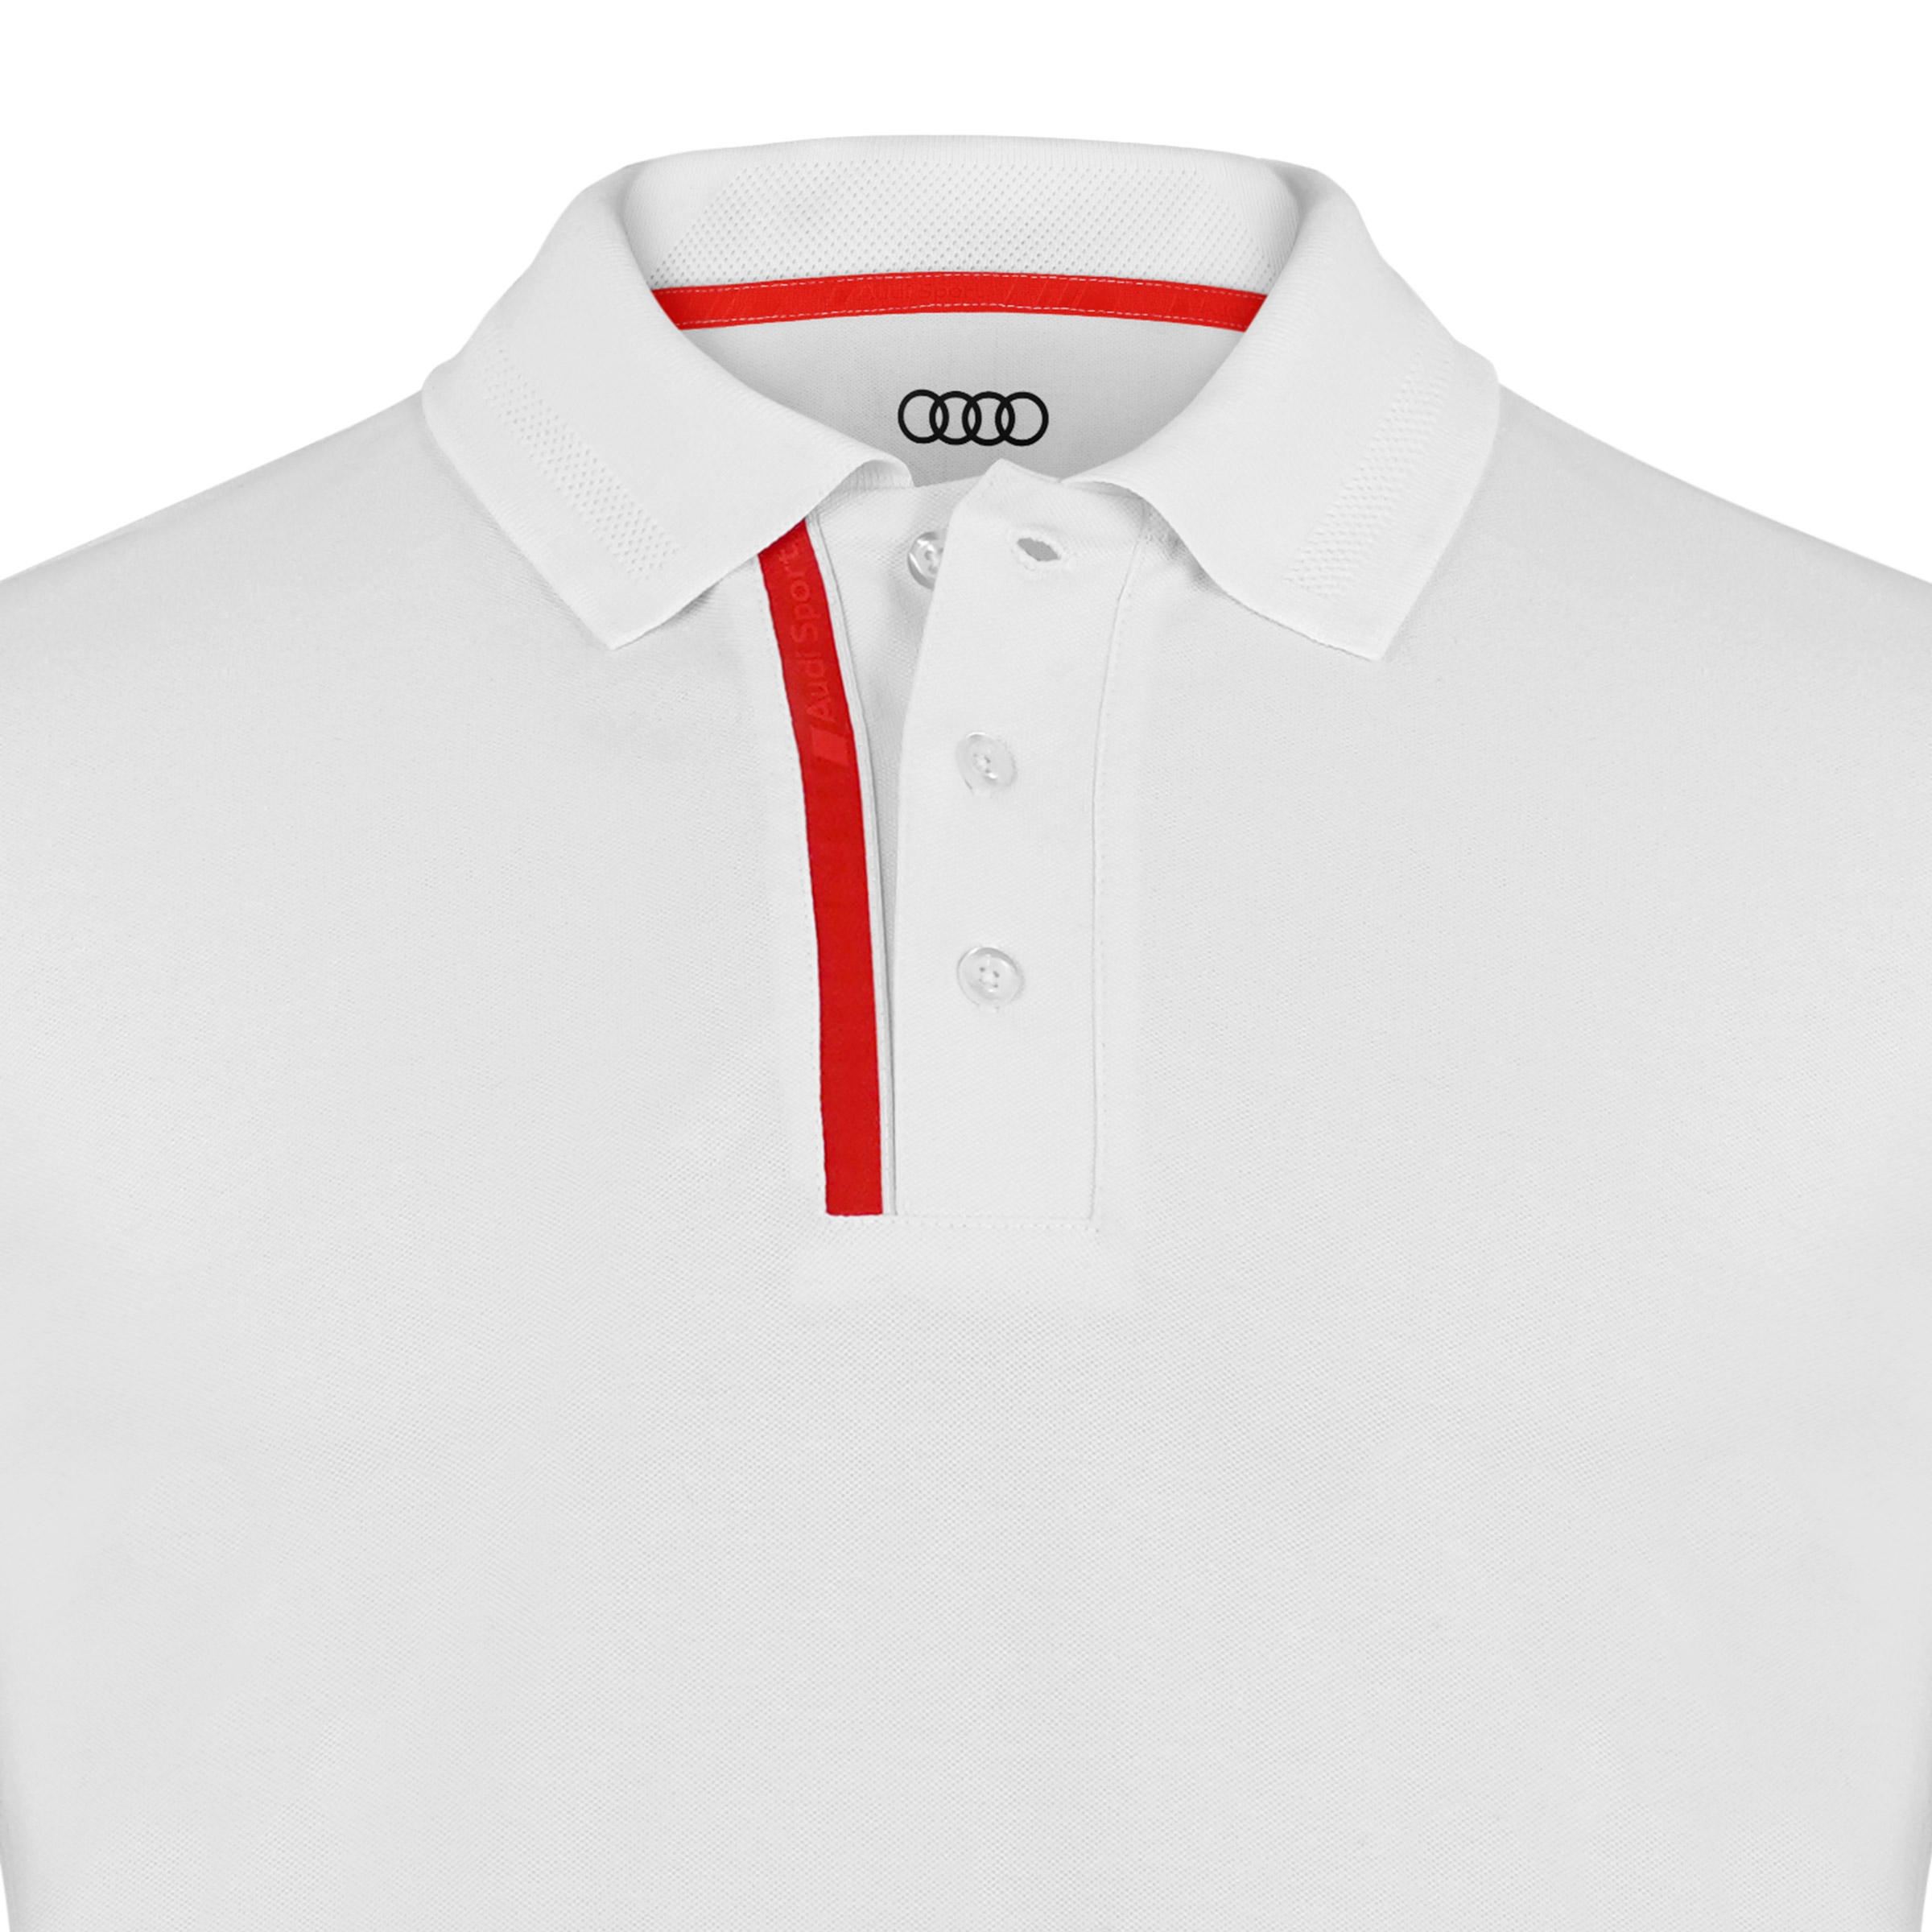 Audi Sport Poloshirt Herren Größe M weiß